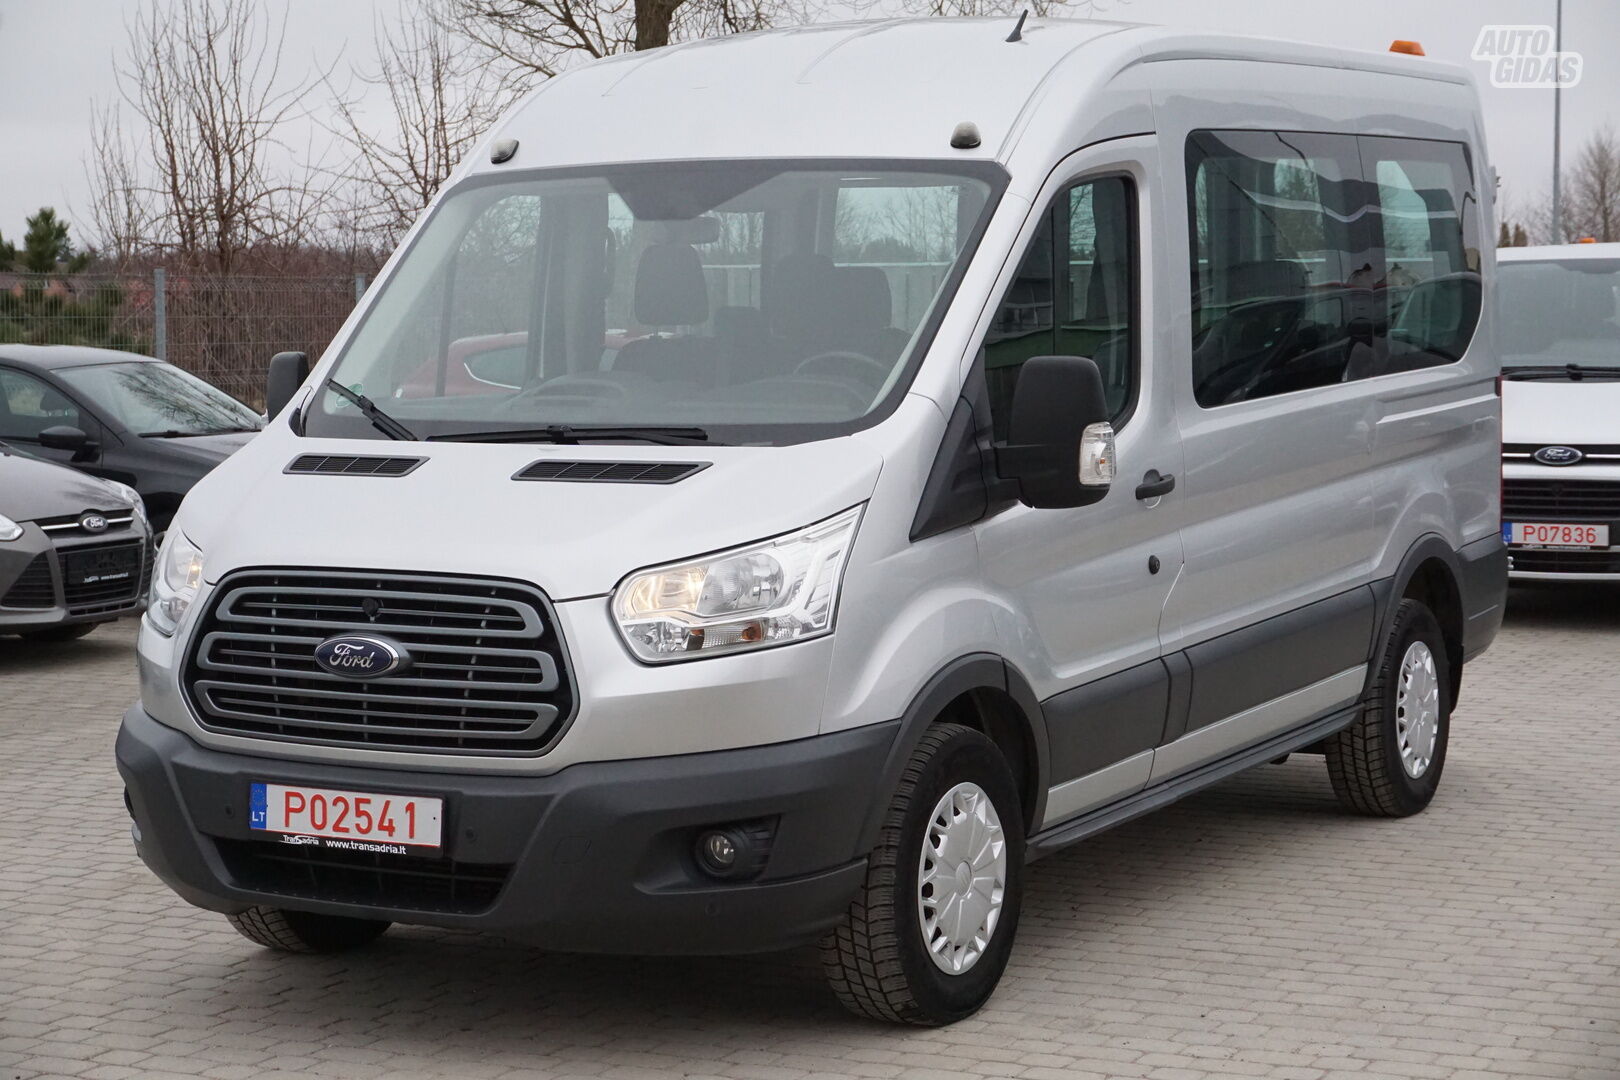 Ford Transit 2015 y Minibus